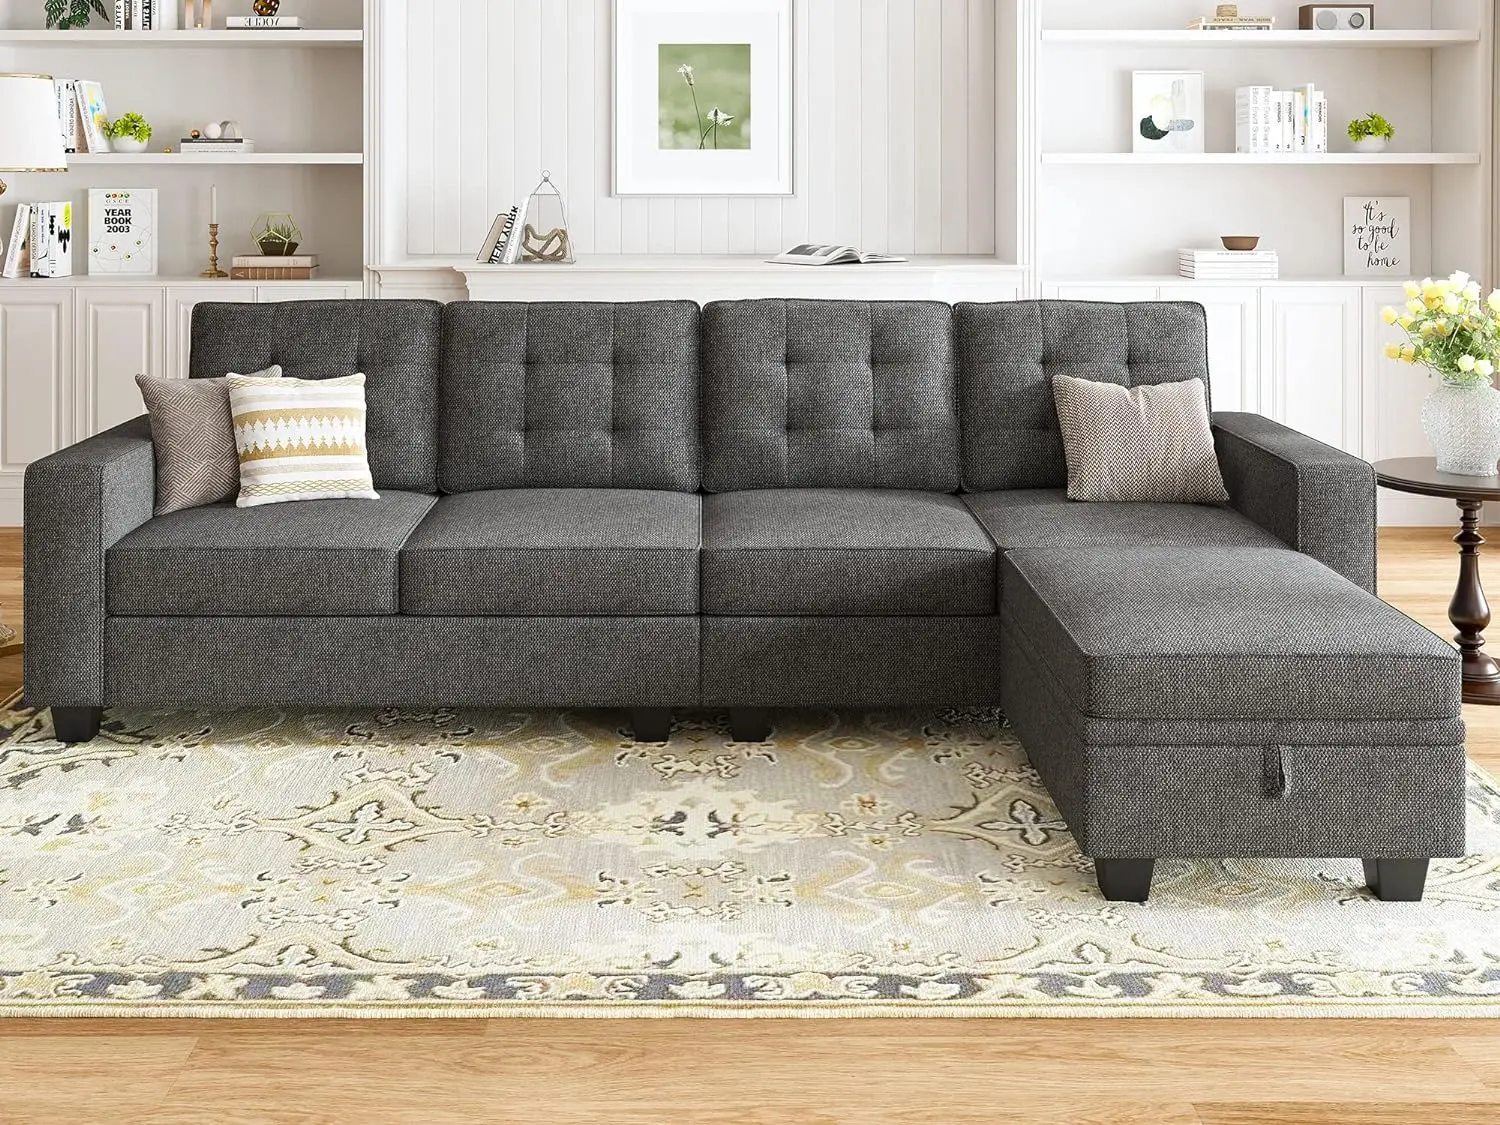 

Секционный диван-трансформер L-образной формы с оттоманкой для хранения, 4-х местный секционный диван с двухсторонним шезлонг, несколько цветов